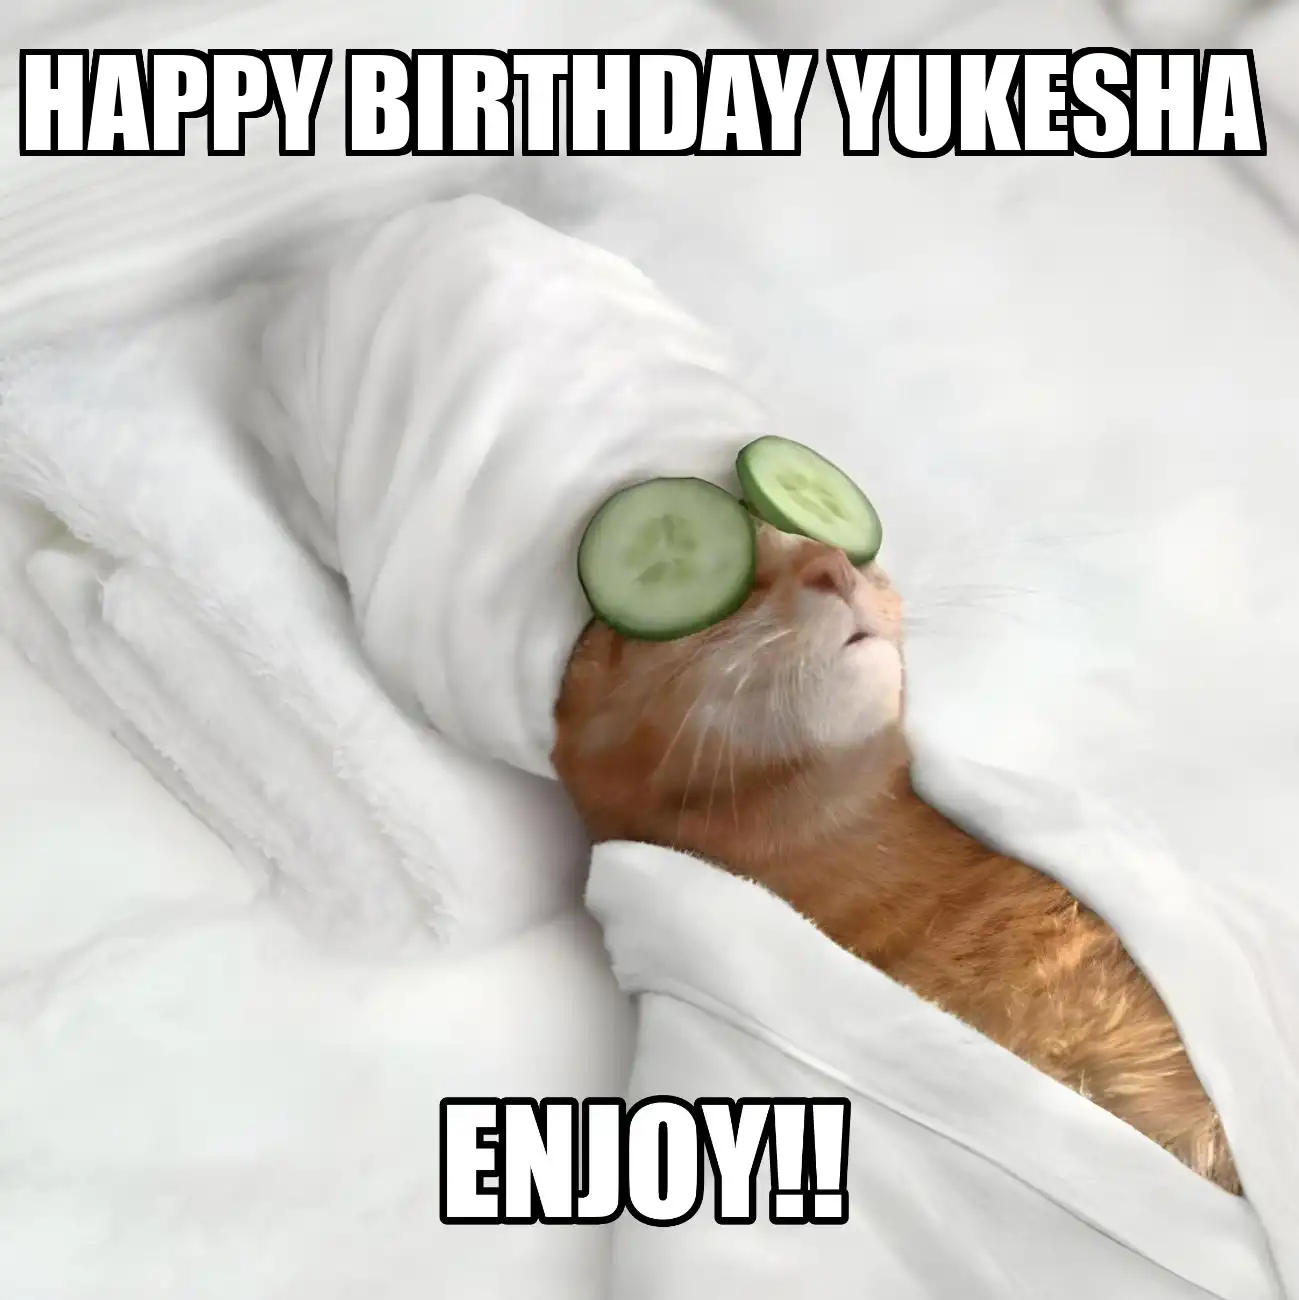 Happy Birthday Yukesha Enjoy Cat Meme